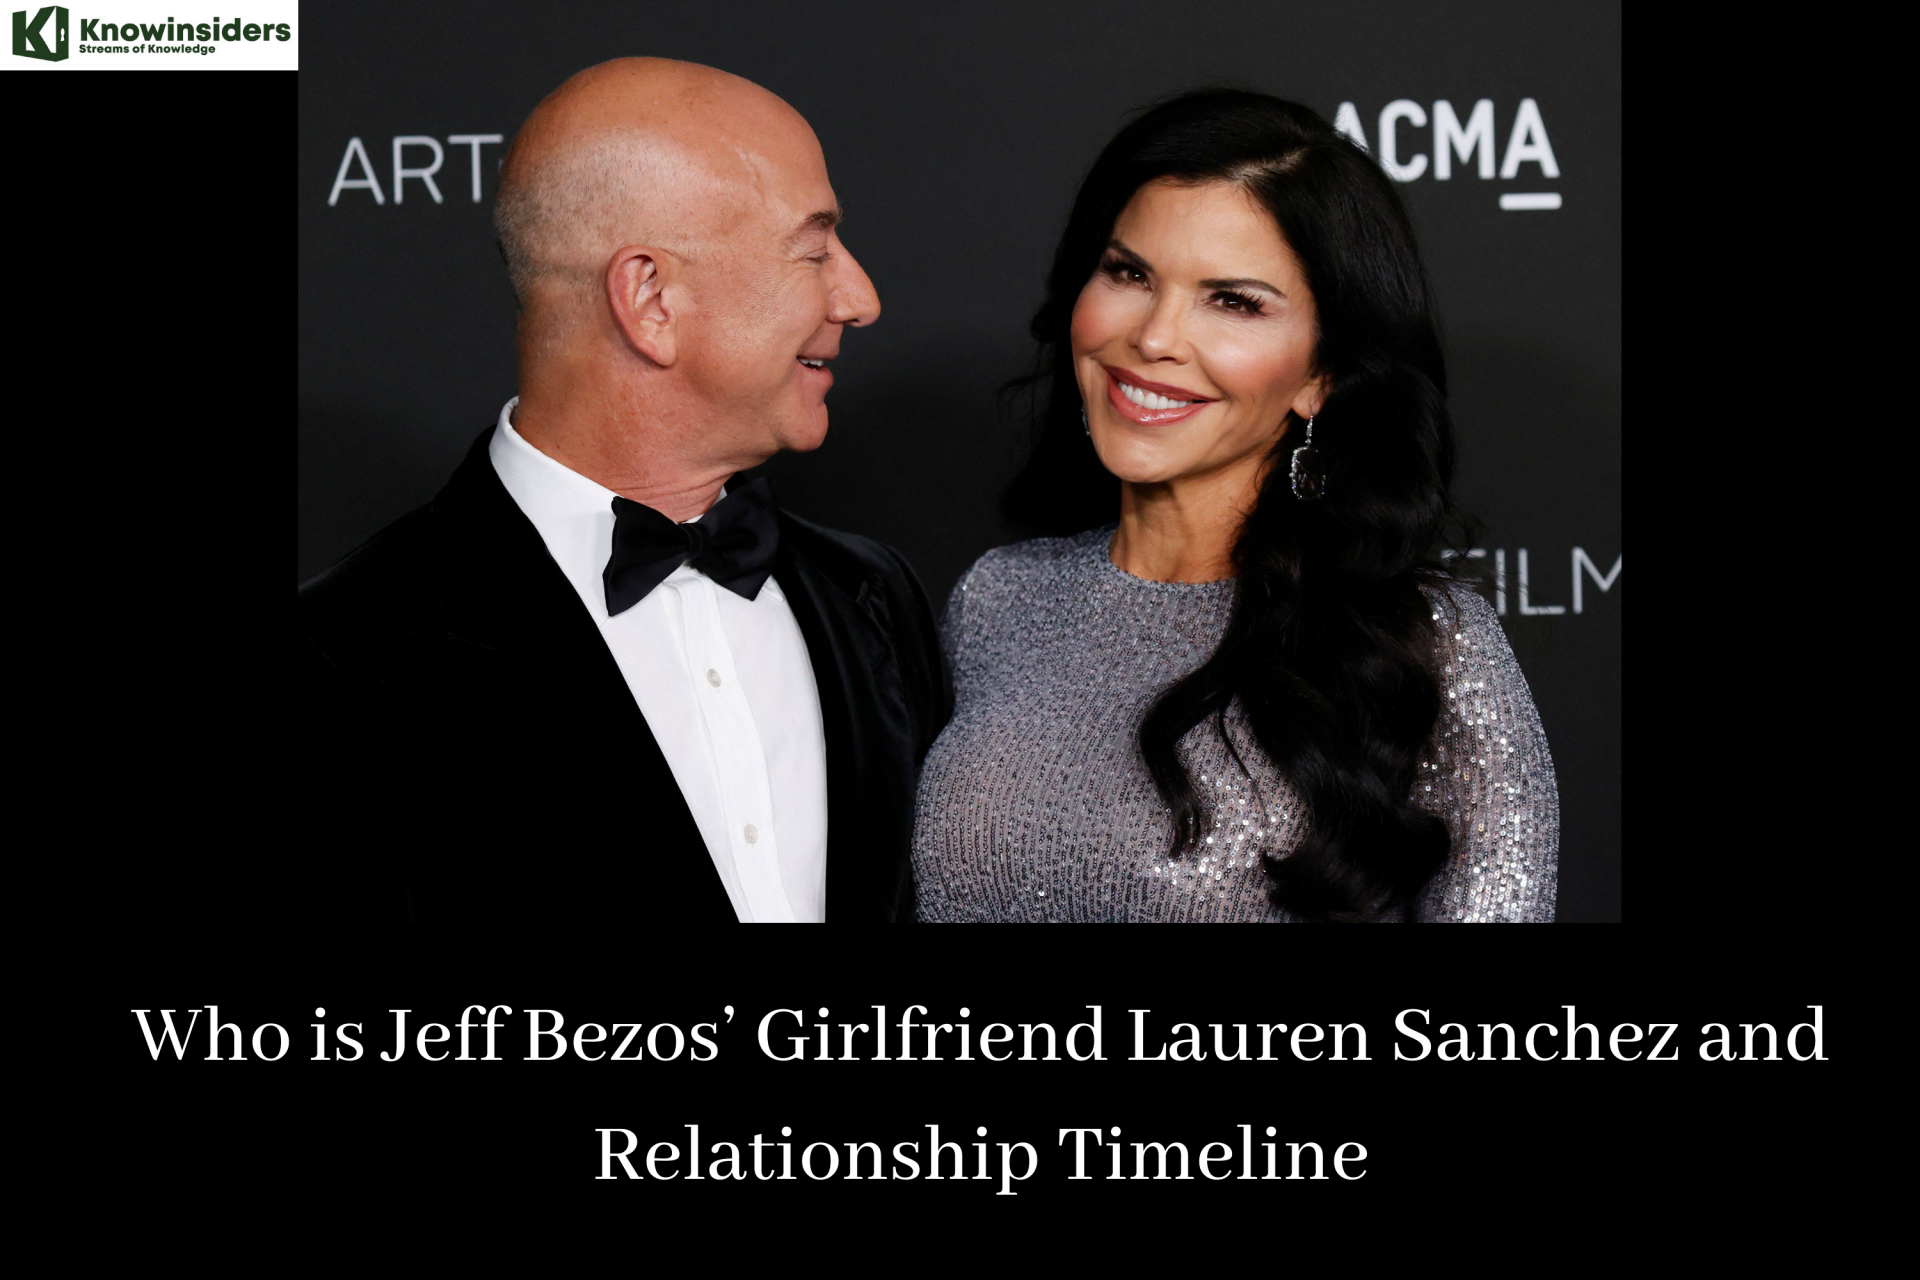 Who is Jeff Bezos’ Girlfriend Lauren Sanchez and Relationship Timeline